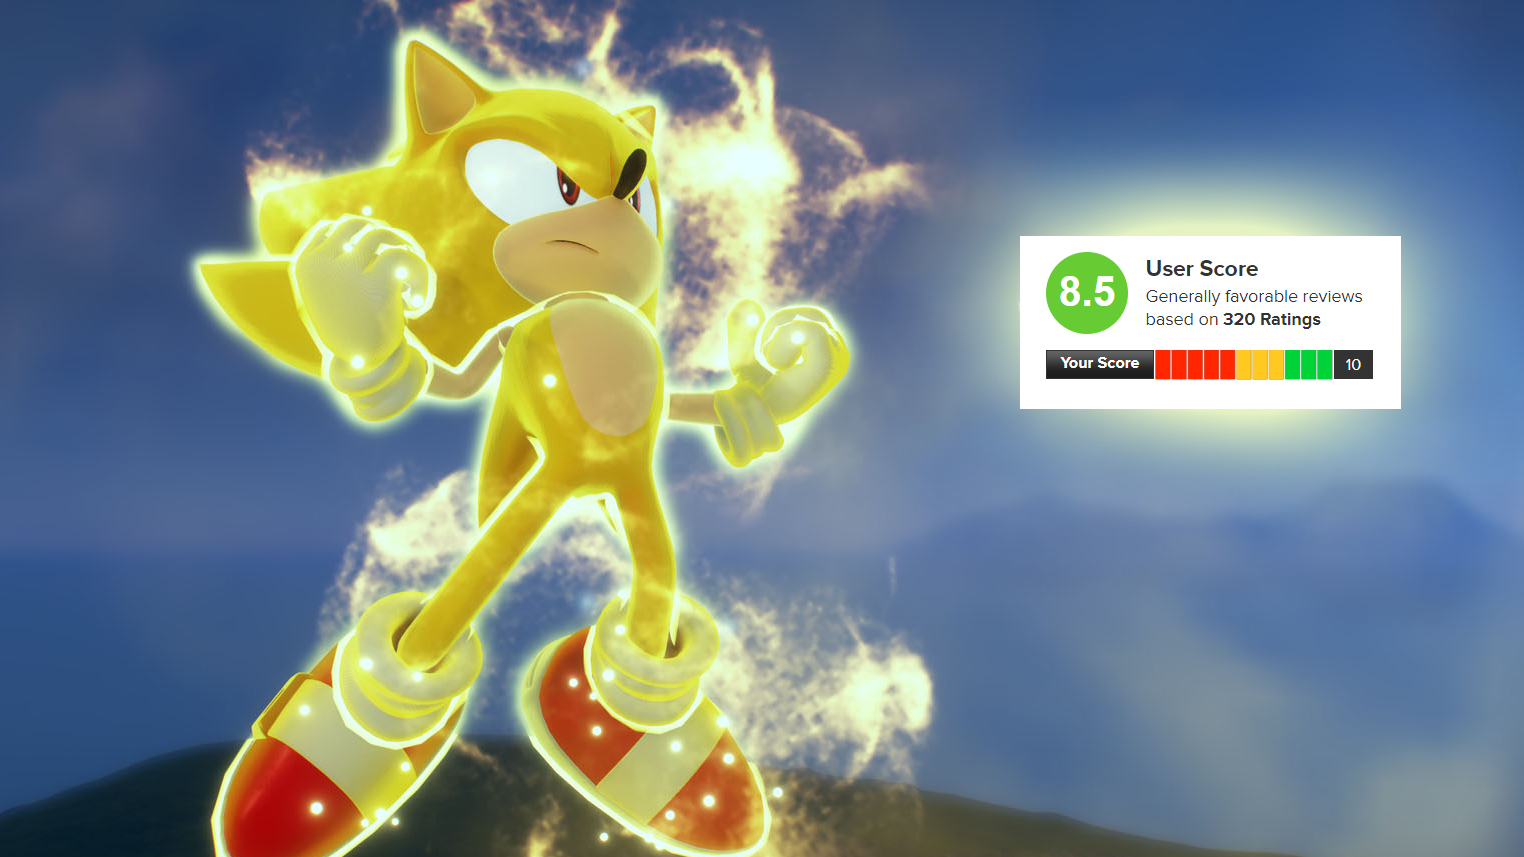 Sonic Frontiers auf Metacritic: Zwischen Renner und komplett verrannt